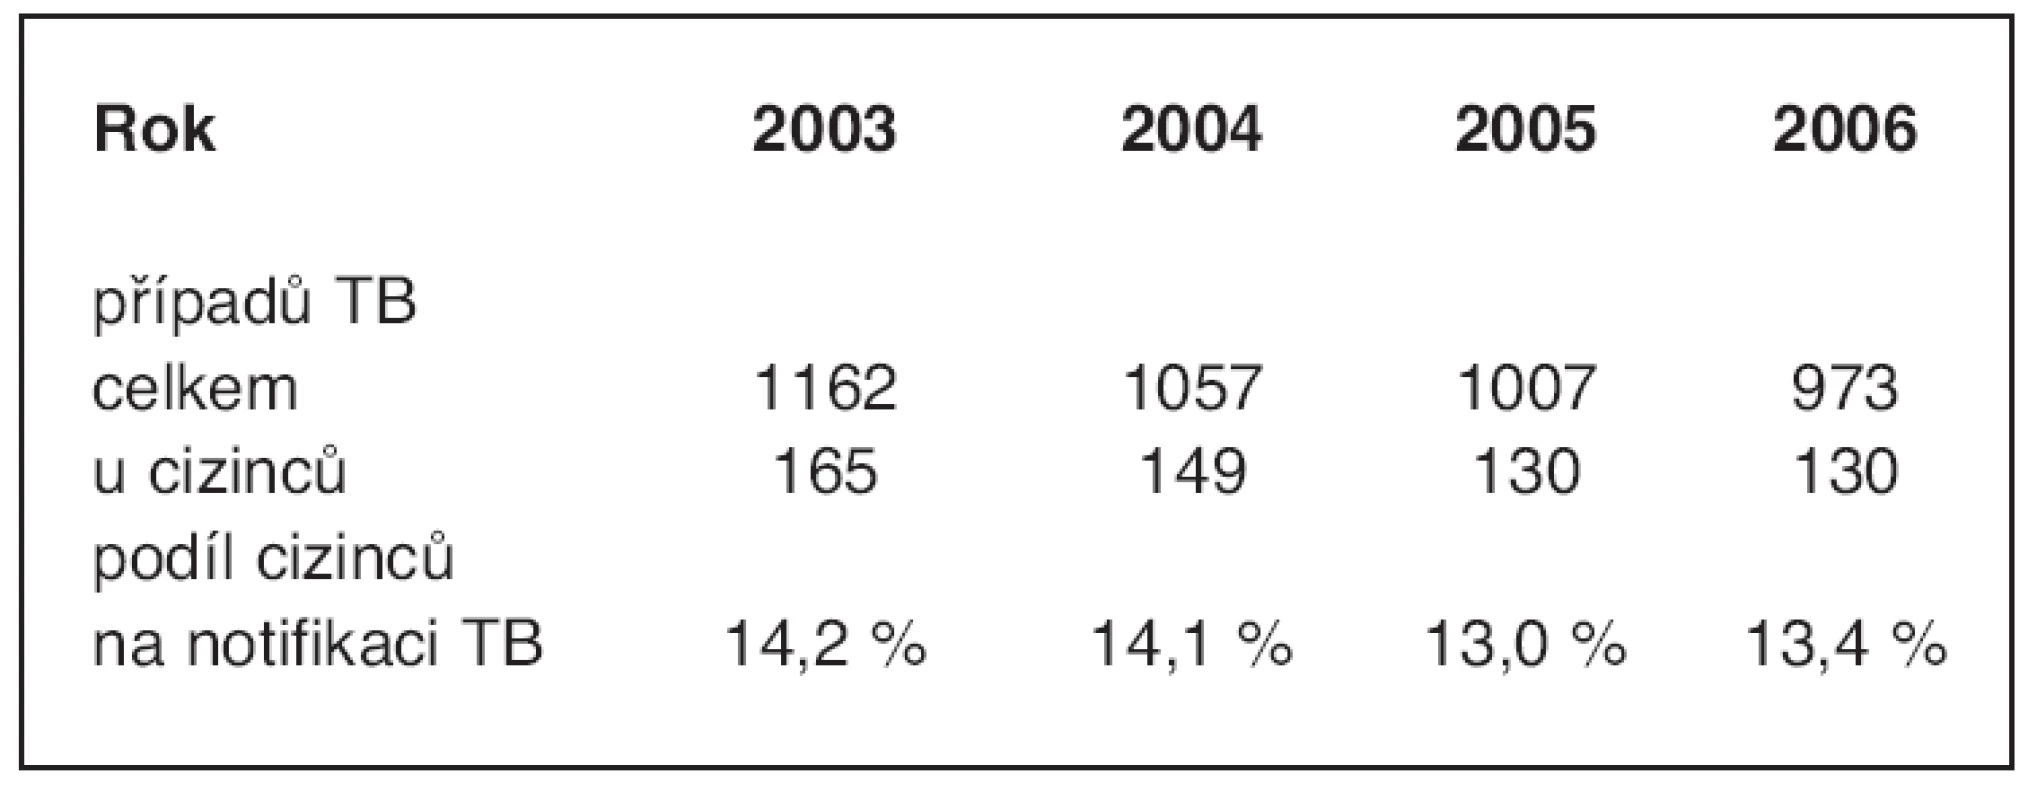 Počet hlášených případů TB v České republice
v letech 2003–2006 celkem a u cizinců